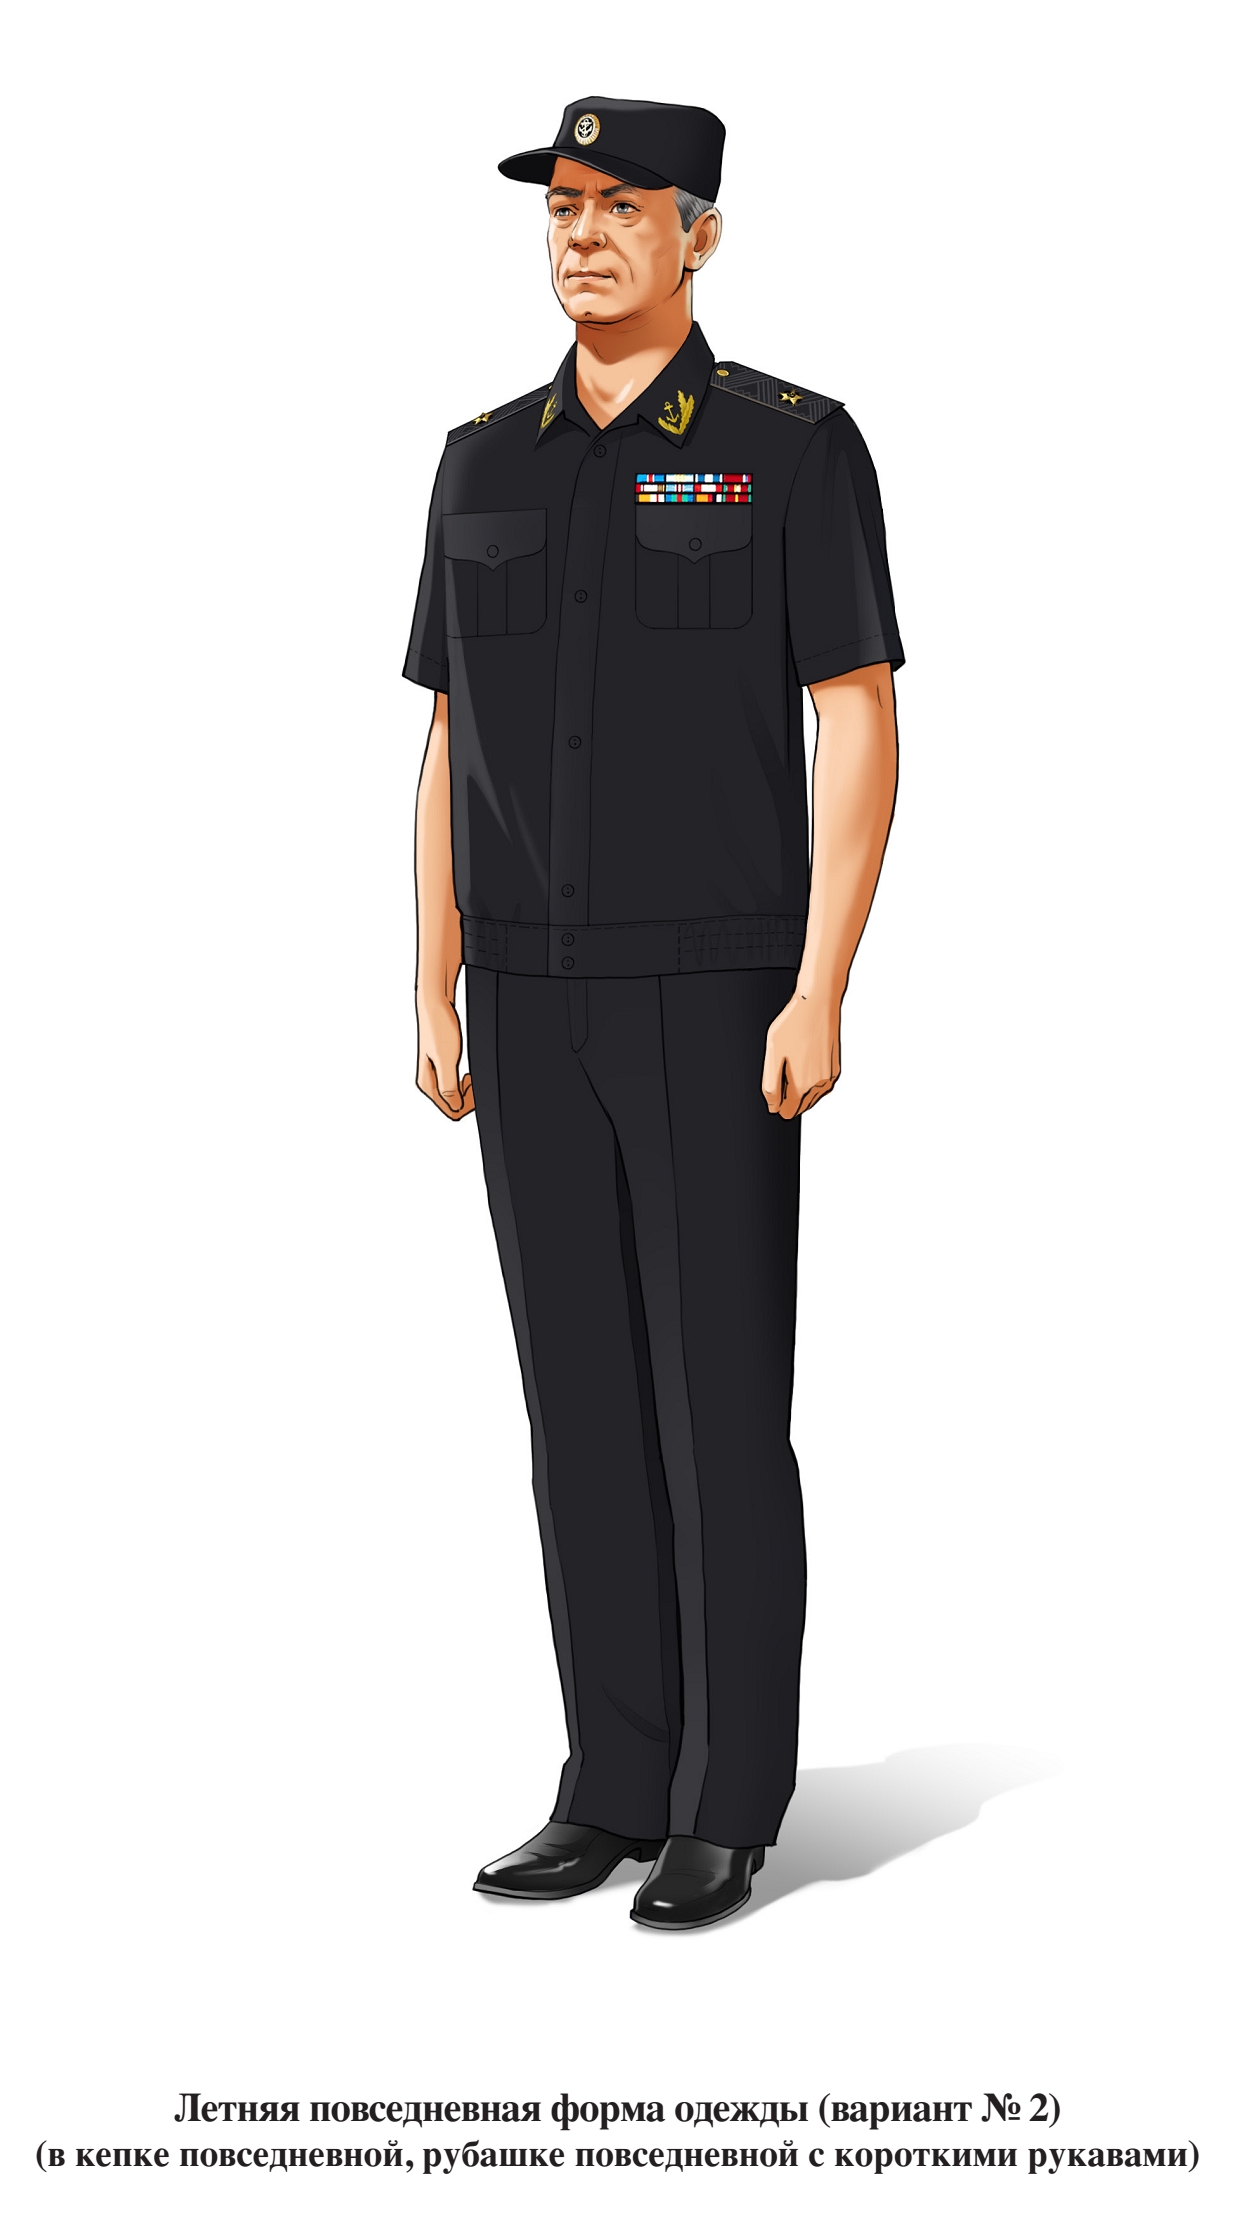 Адмирал, летняя повседневная форма ВМФ, в повседневной рубашке с коротким рукавом и кепке